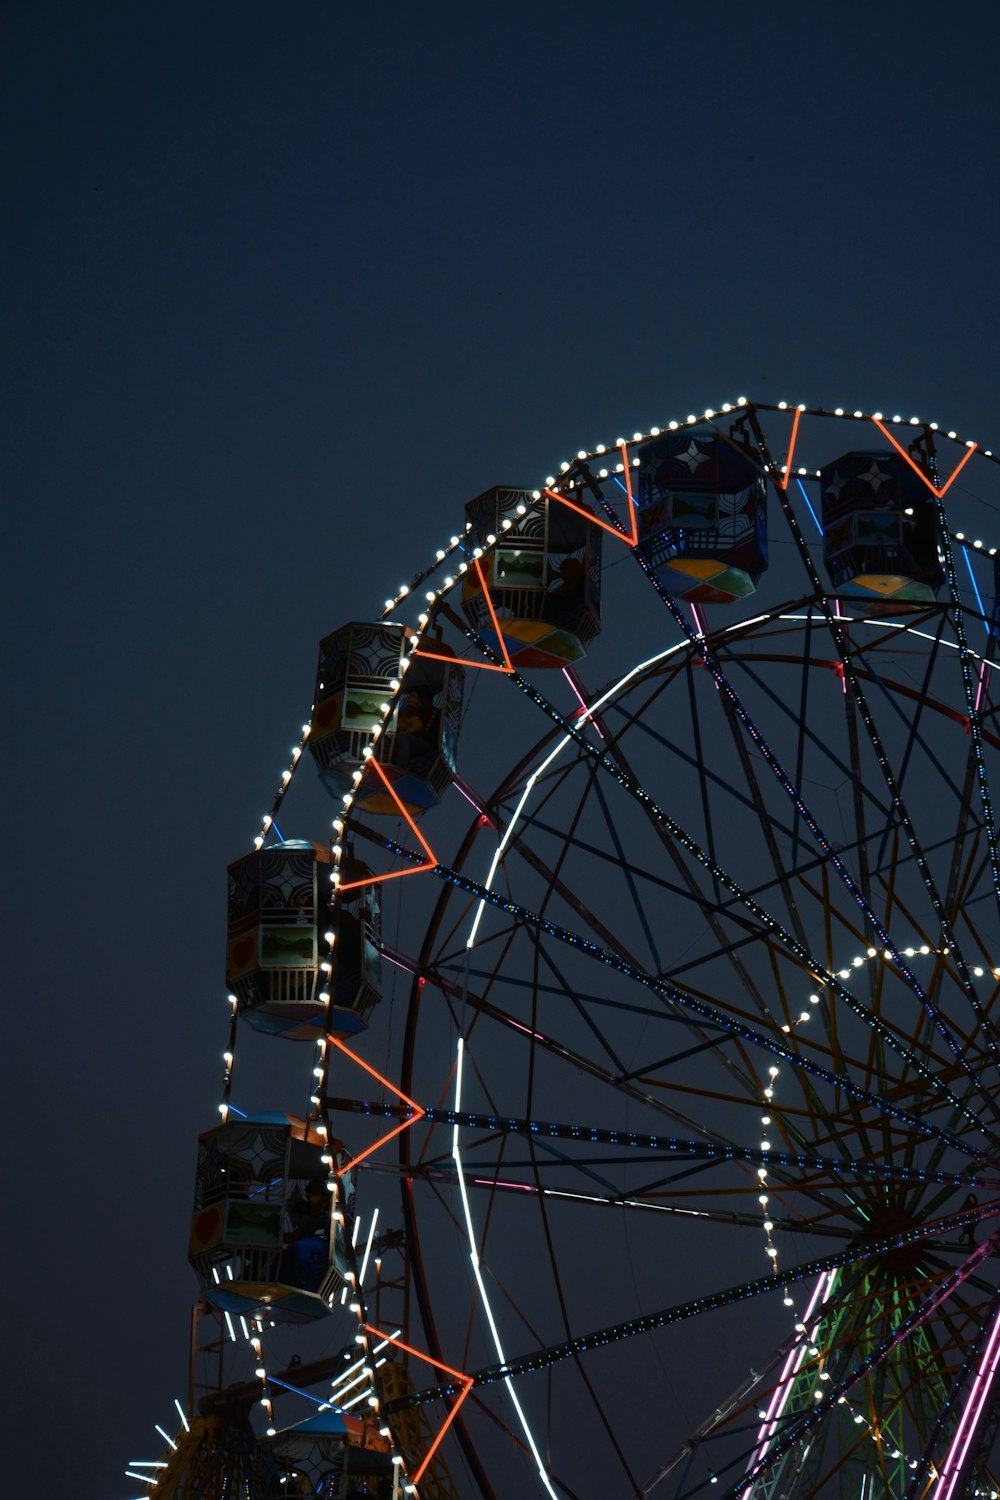 Ein nachts beleuchtetes Riesenrad mit Himmelshintergrund